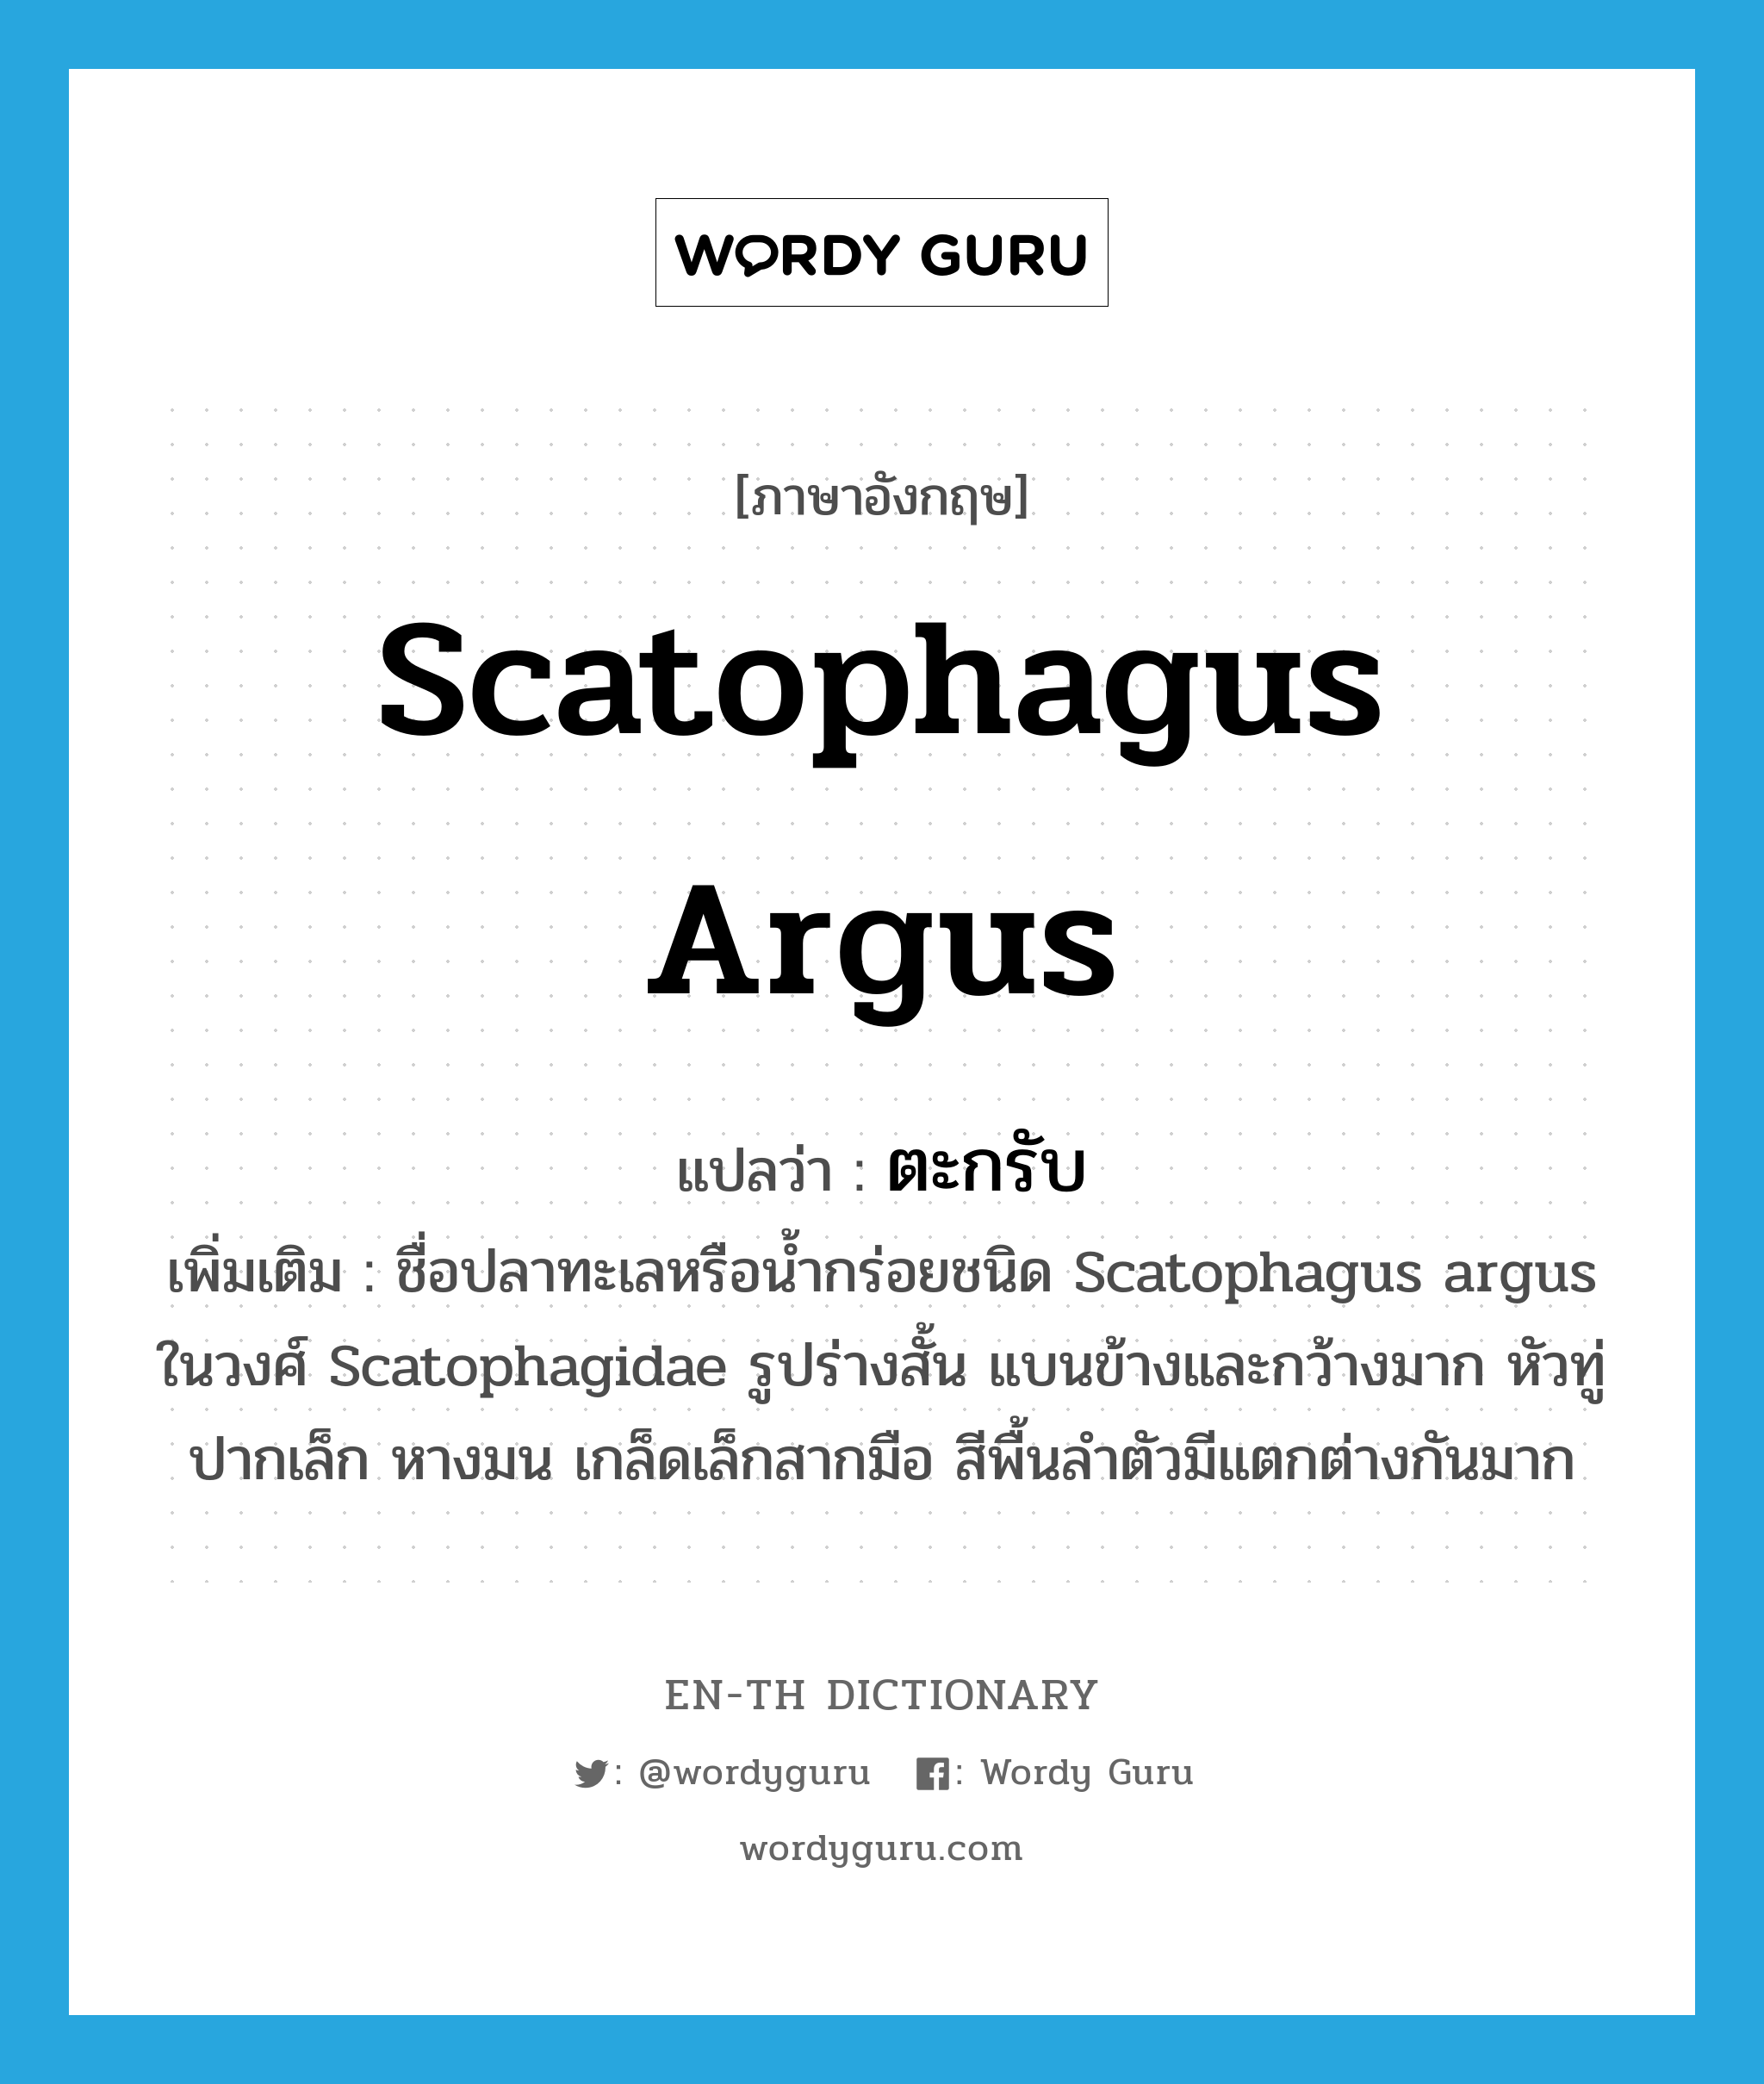 ตะกรับ ภาษาอังกฤษ?, คำศัพท์ภาษาอังกฤษ ตะกรับ แปลว่า Scatophagus argus ประเภท N เพิ่มเติม ชื่อปลาทะเลหรือน้ำกร่อยชนิด Scatophagus argus ในวงศ์ Scatophagidae รูปร่างสั้น แบนข้างและกว้างมาก หัวทู่ ปากเล็ก หางมน เกล็ดเล็กสากมือ สีพื้นลำตัวมีแตกต่างกันมาก หมวด N